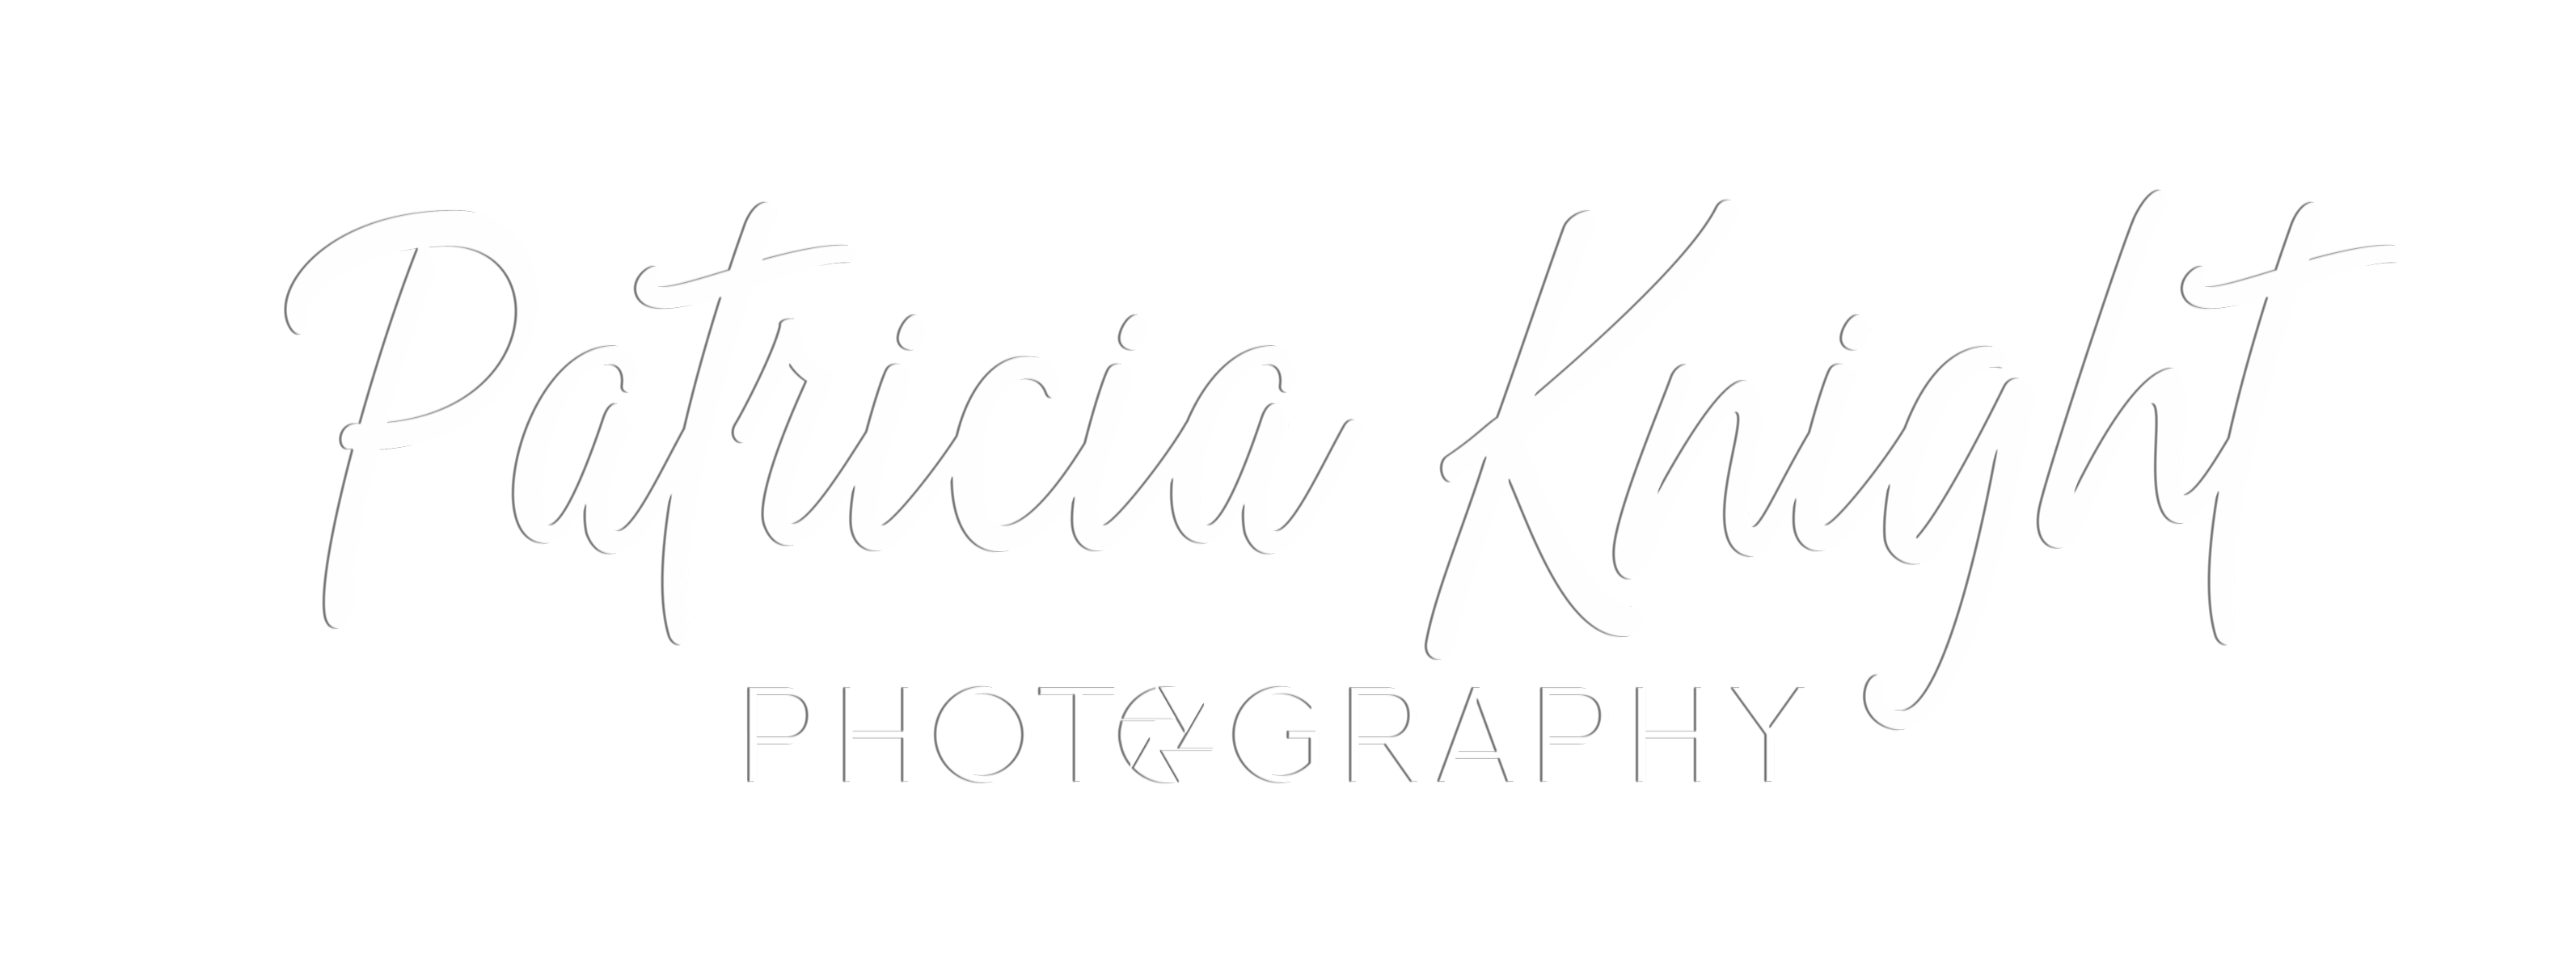 Patricia Knight Photography